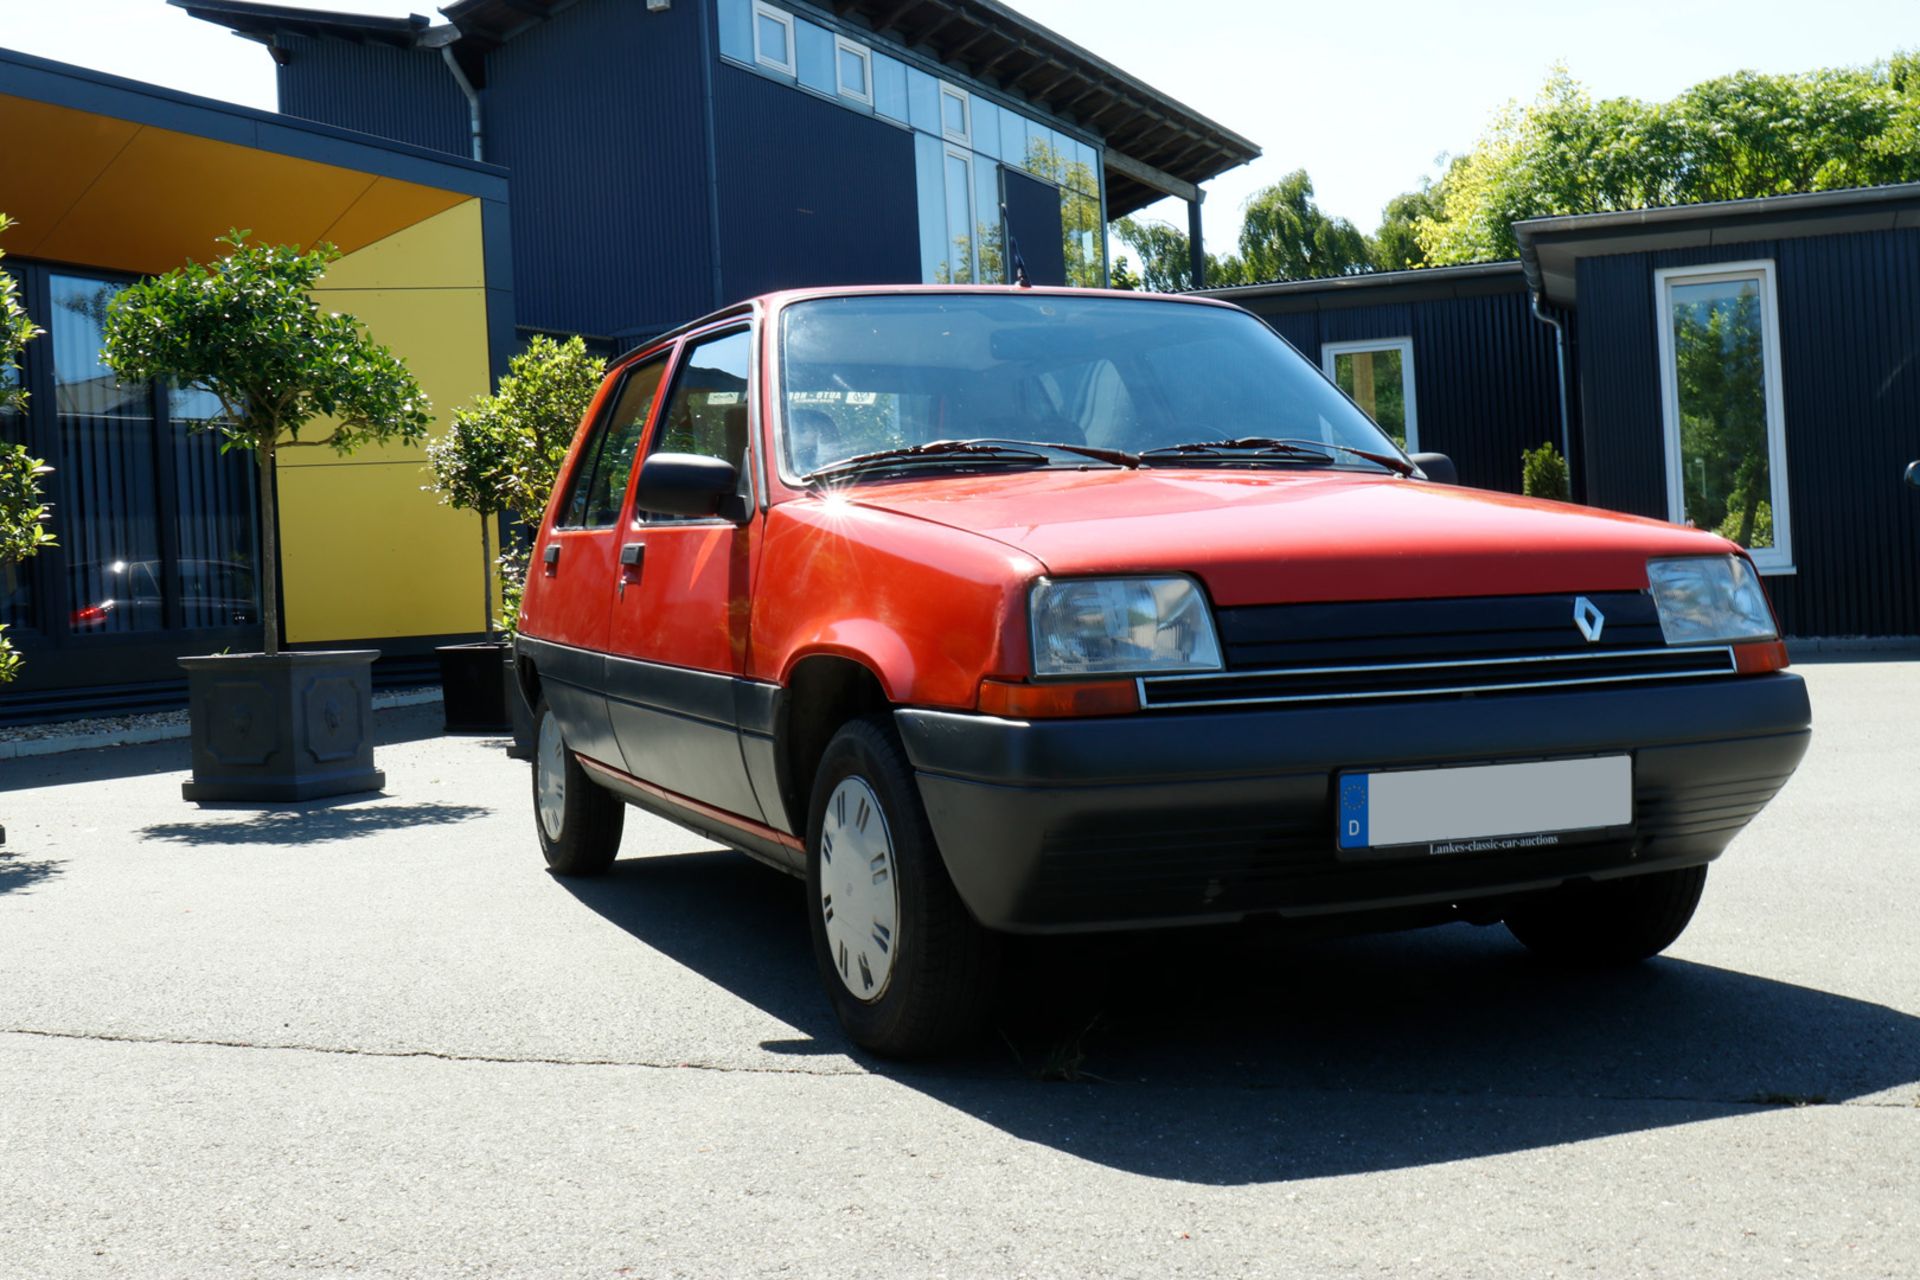 Renault R5, VP1B40 301G05 20581, Bj. 2.4.1986, KW49/5250, 5-Türig, Automatic, Original - Image 14 of 26